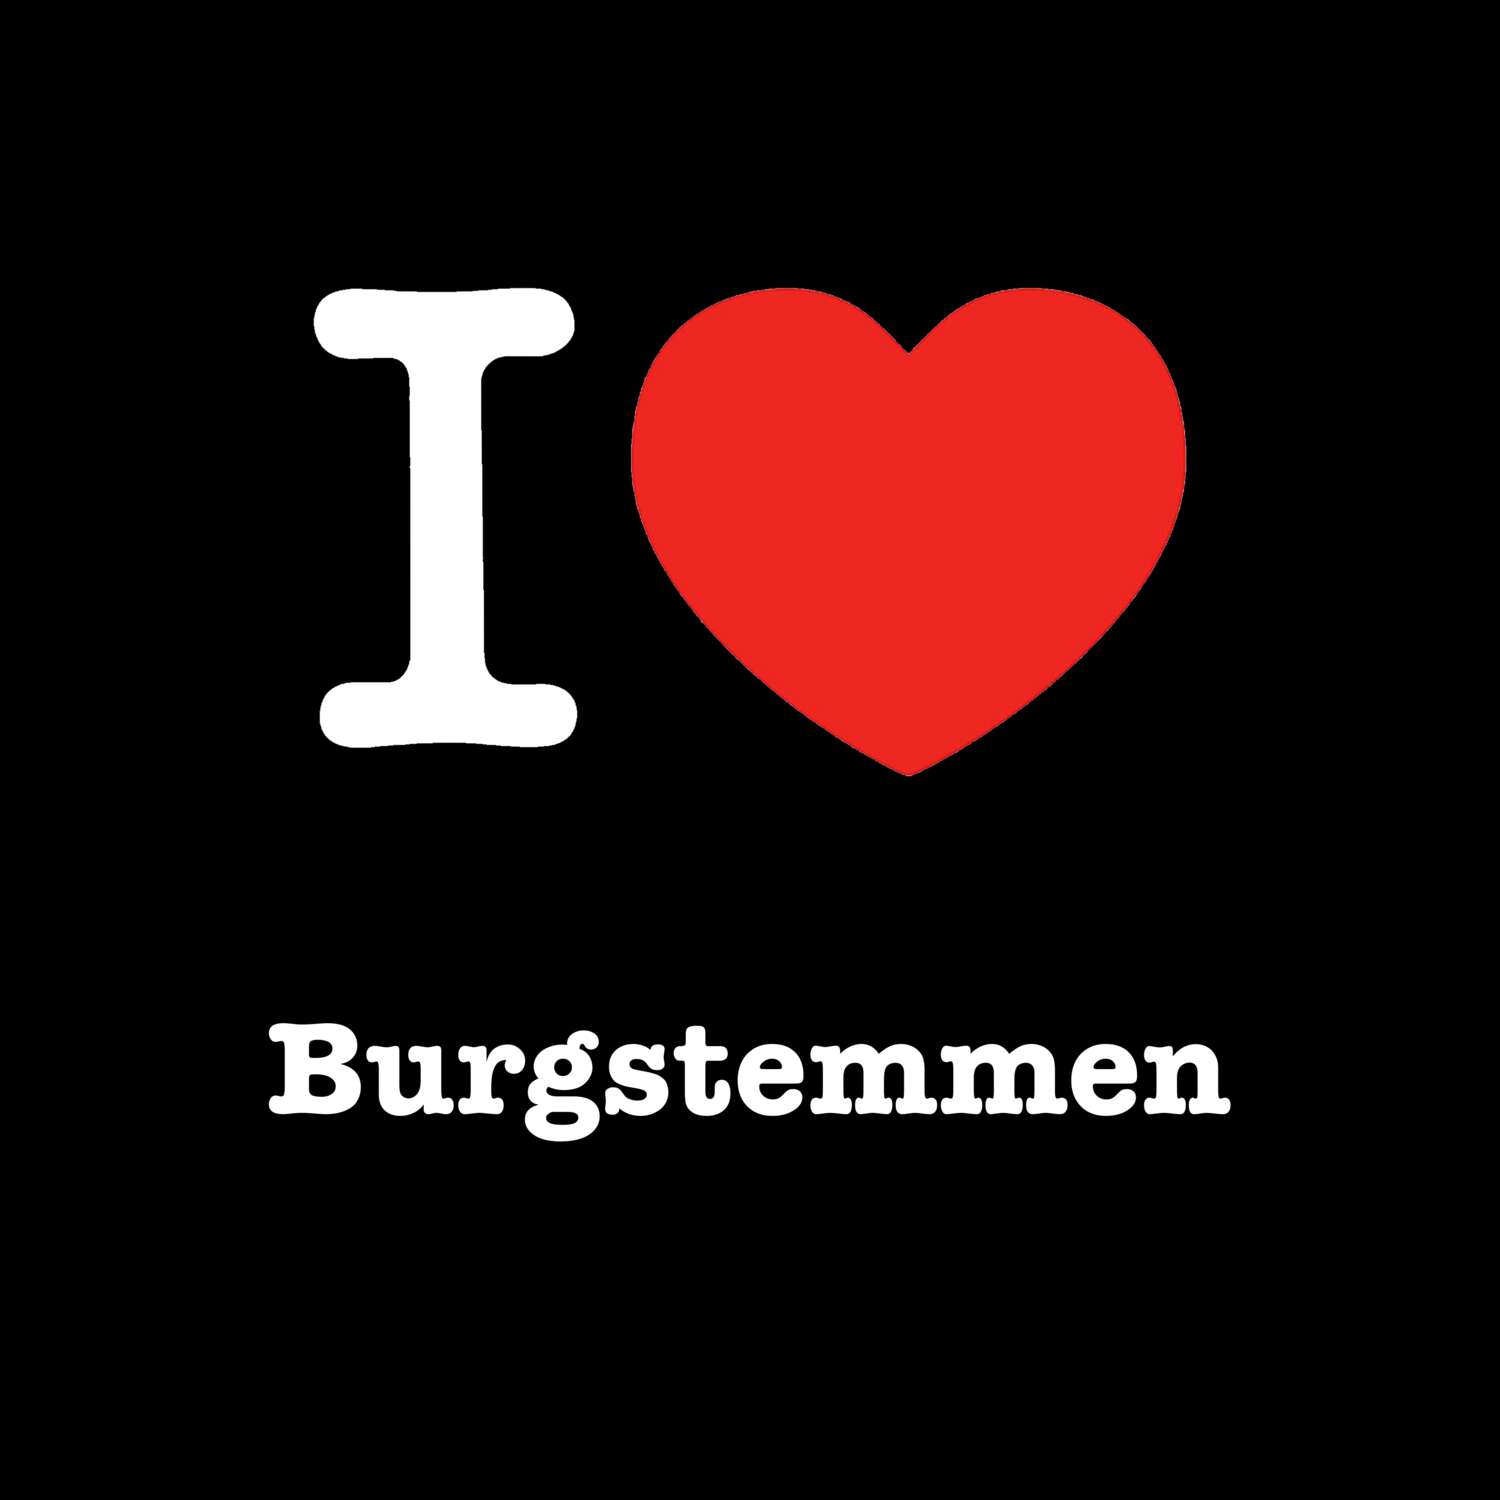 Burgstemmen T-Shirt »I love«